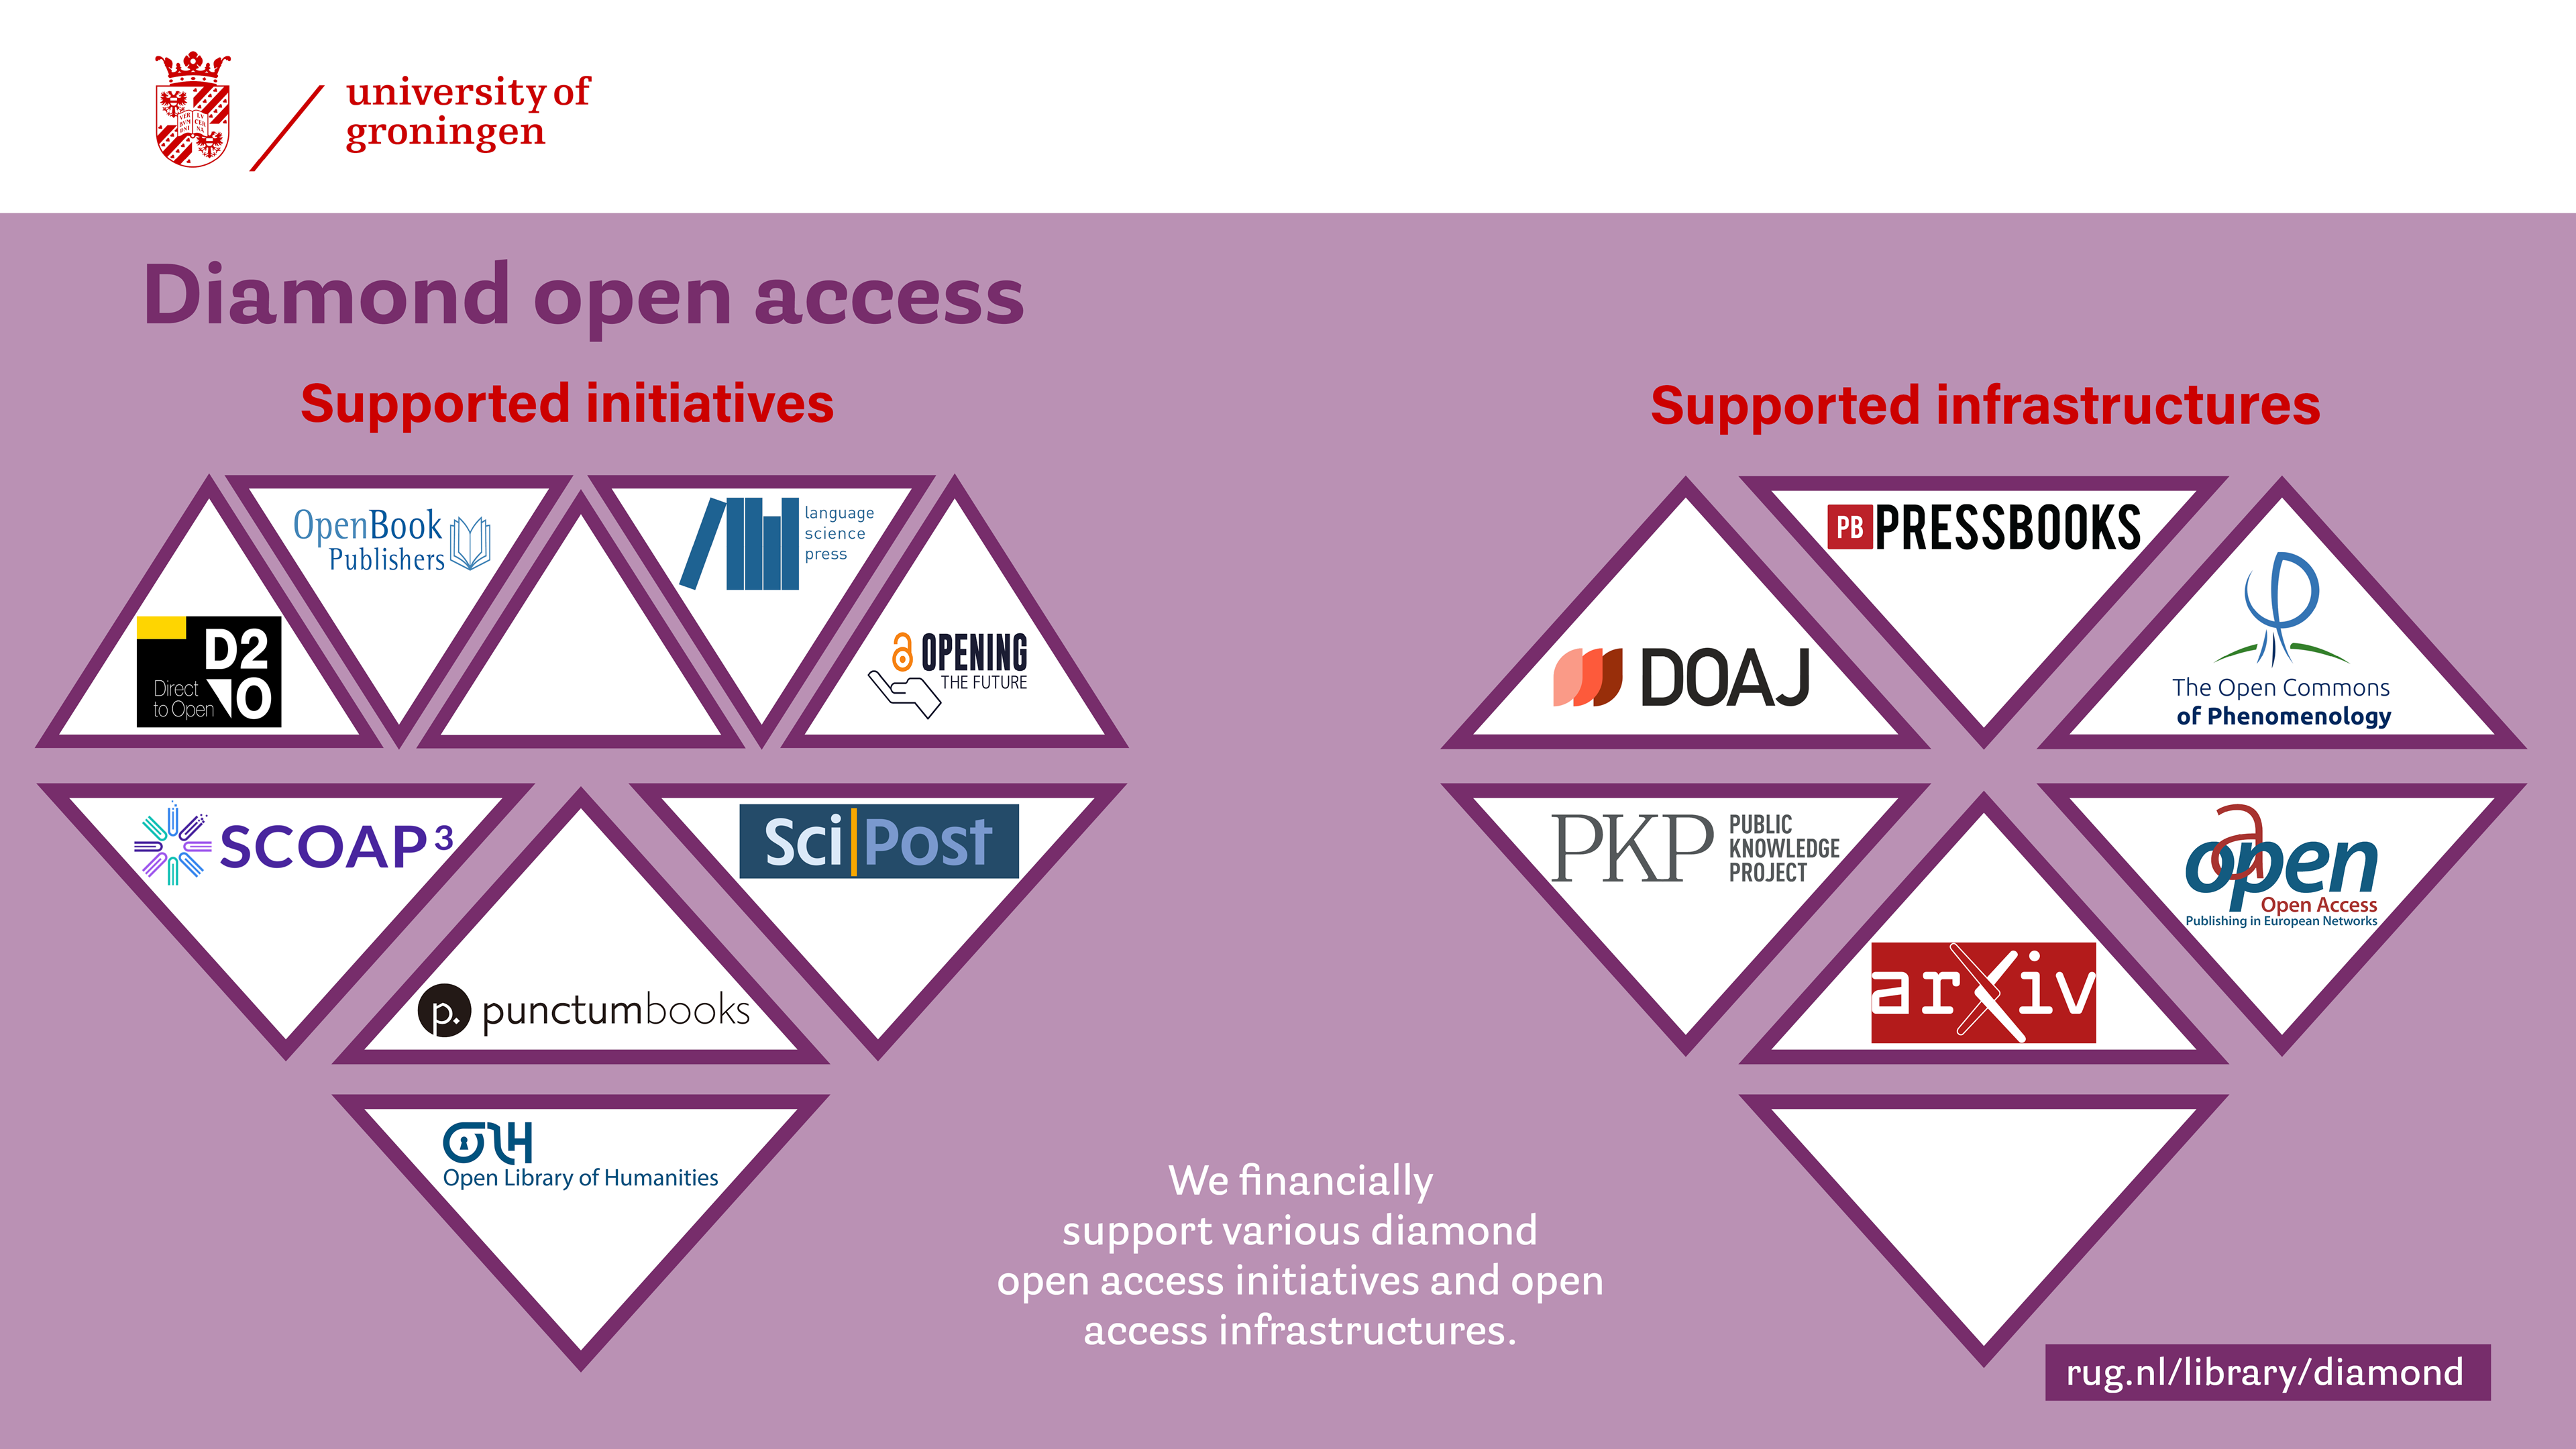 De RUG ondersteunt verschillende diamond open access initiatieven